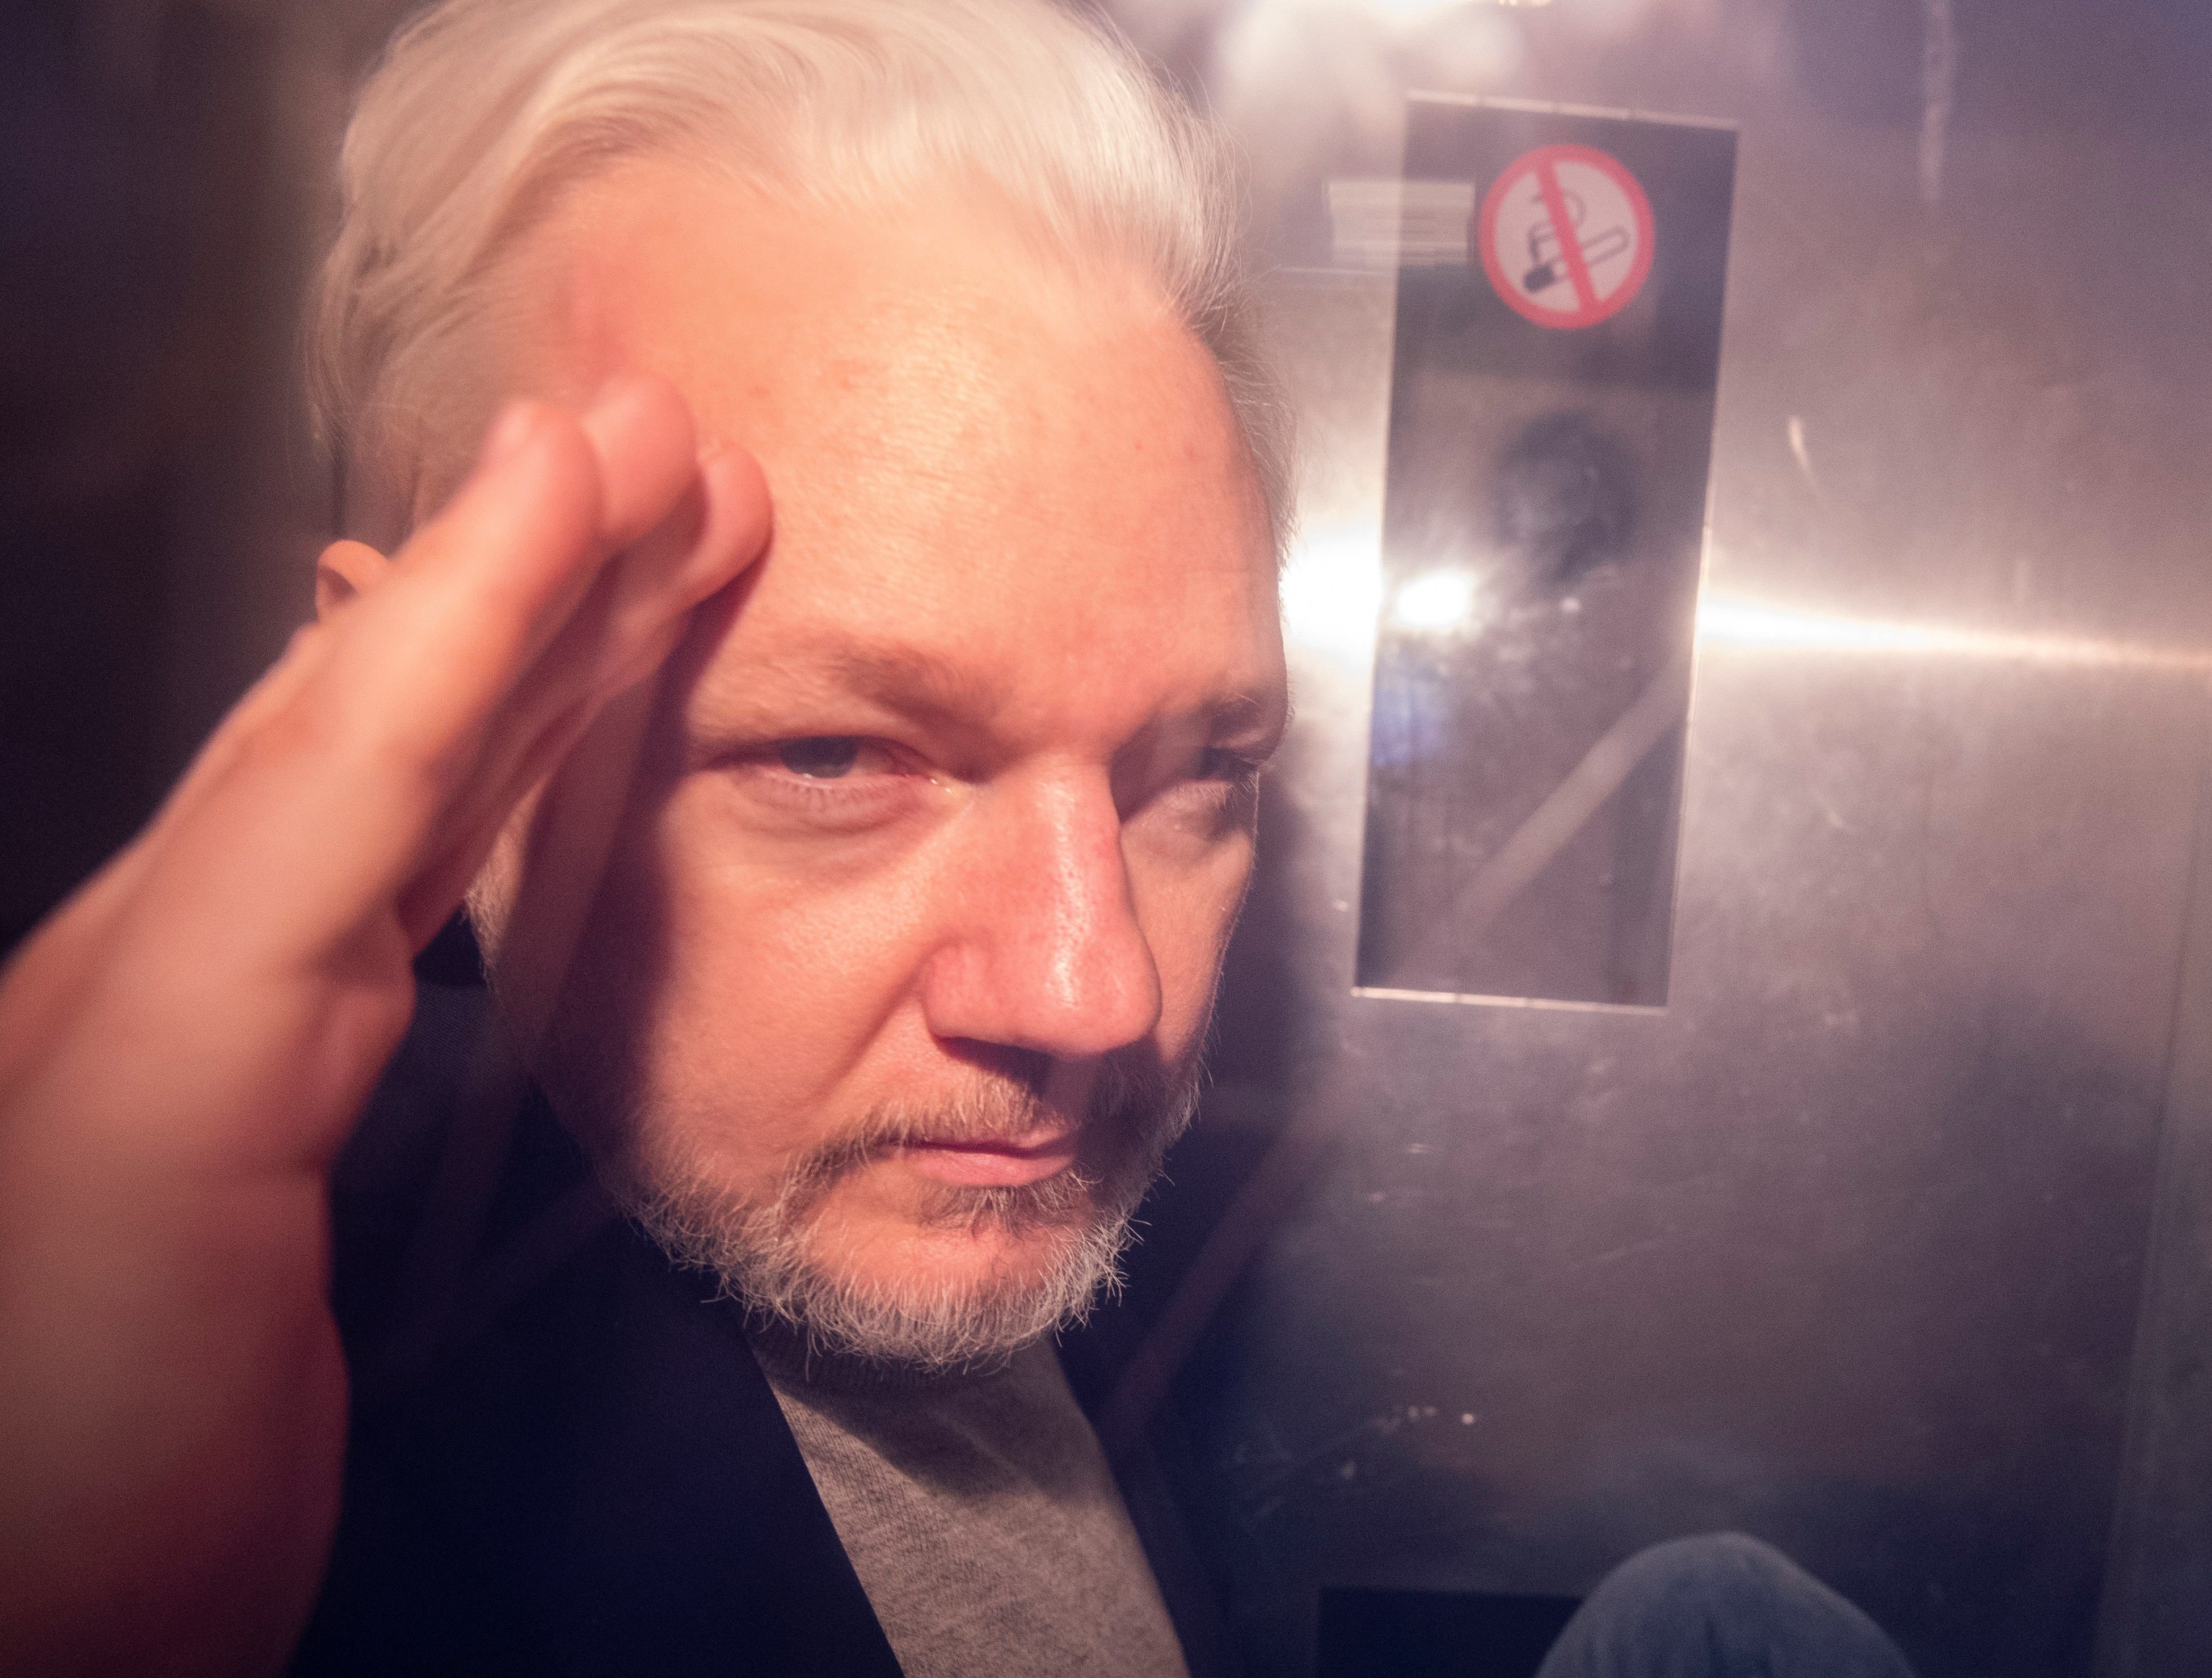 La posible extradición de Assange y la libertad de expresión